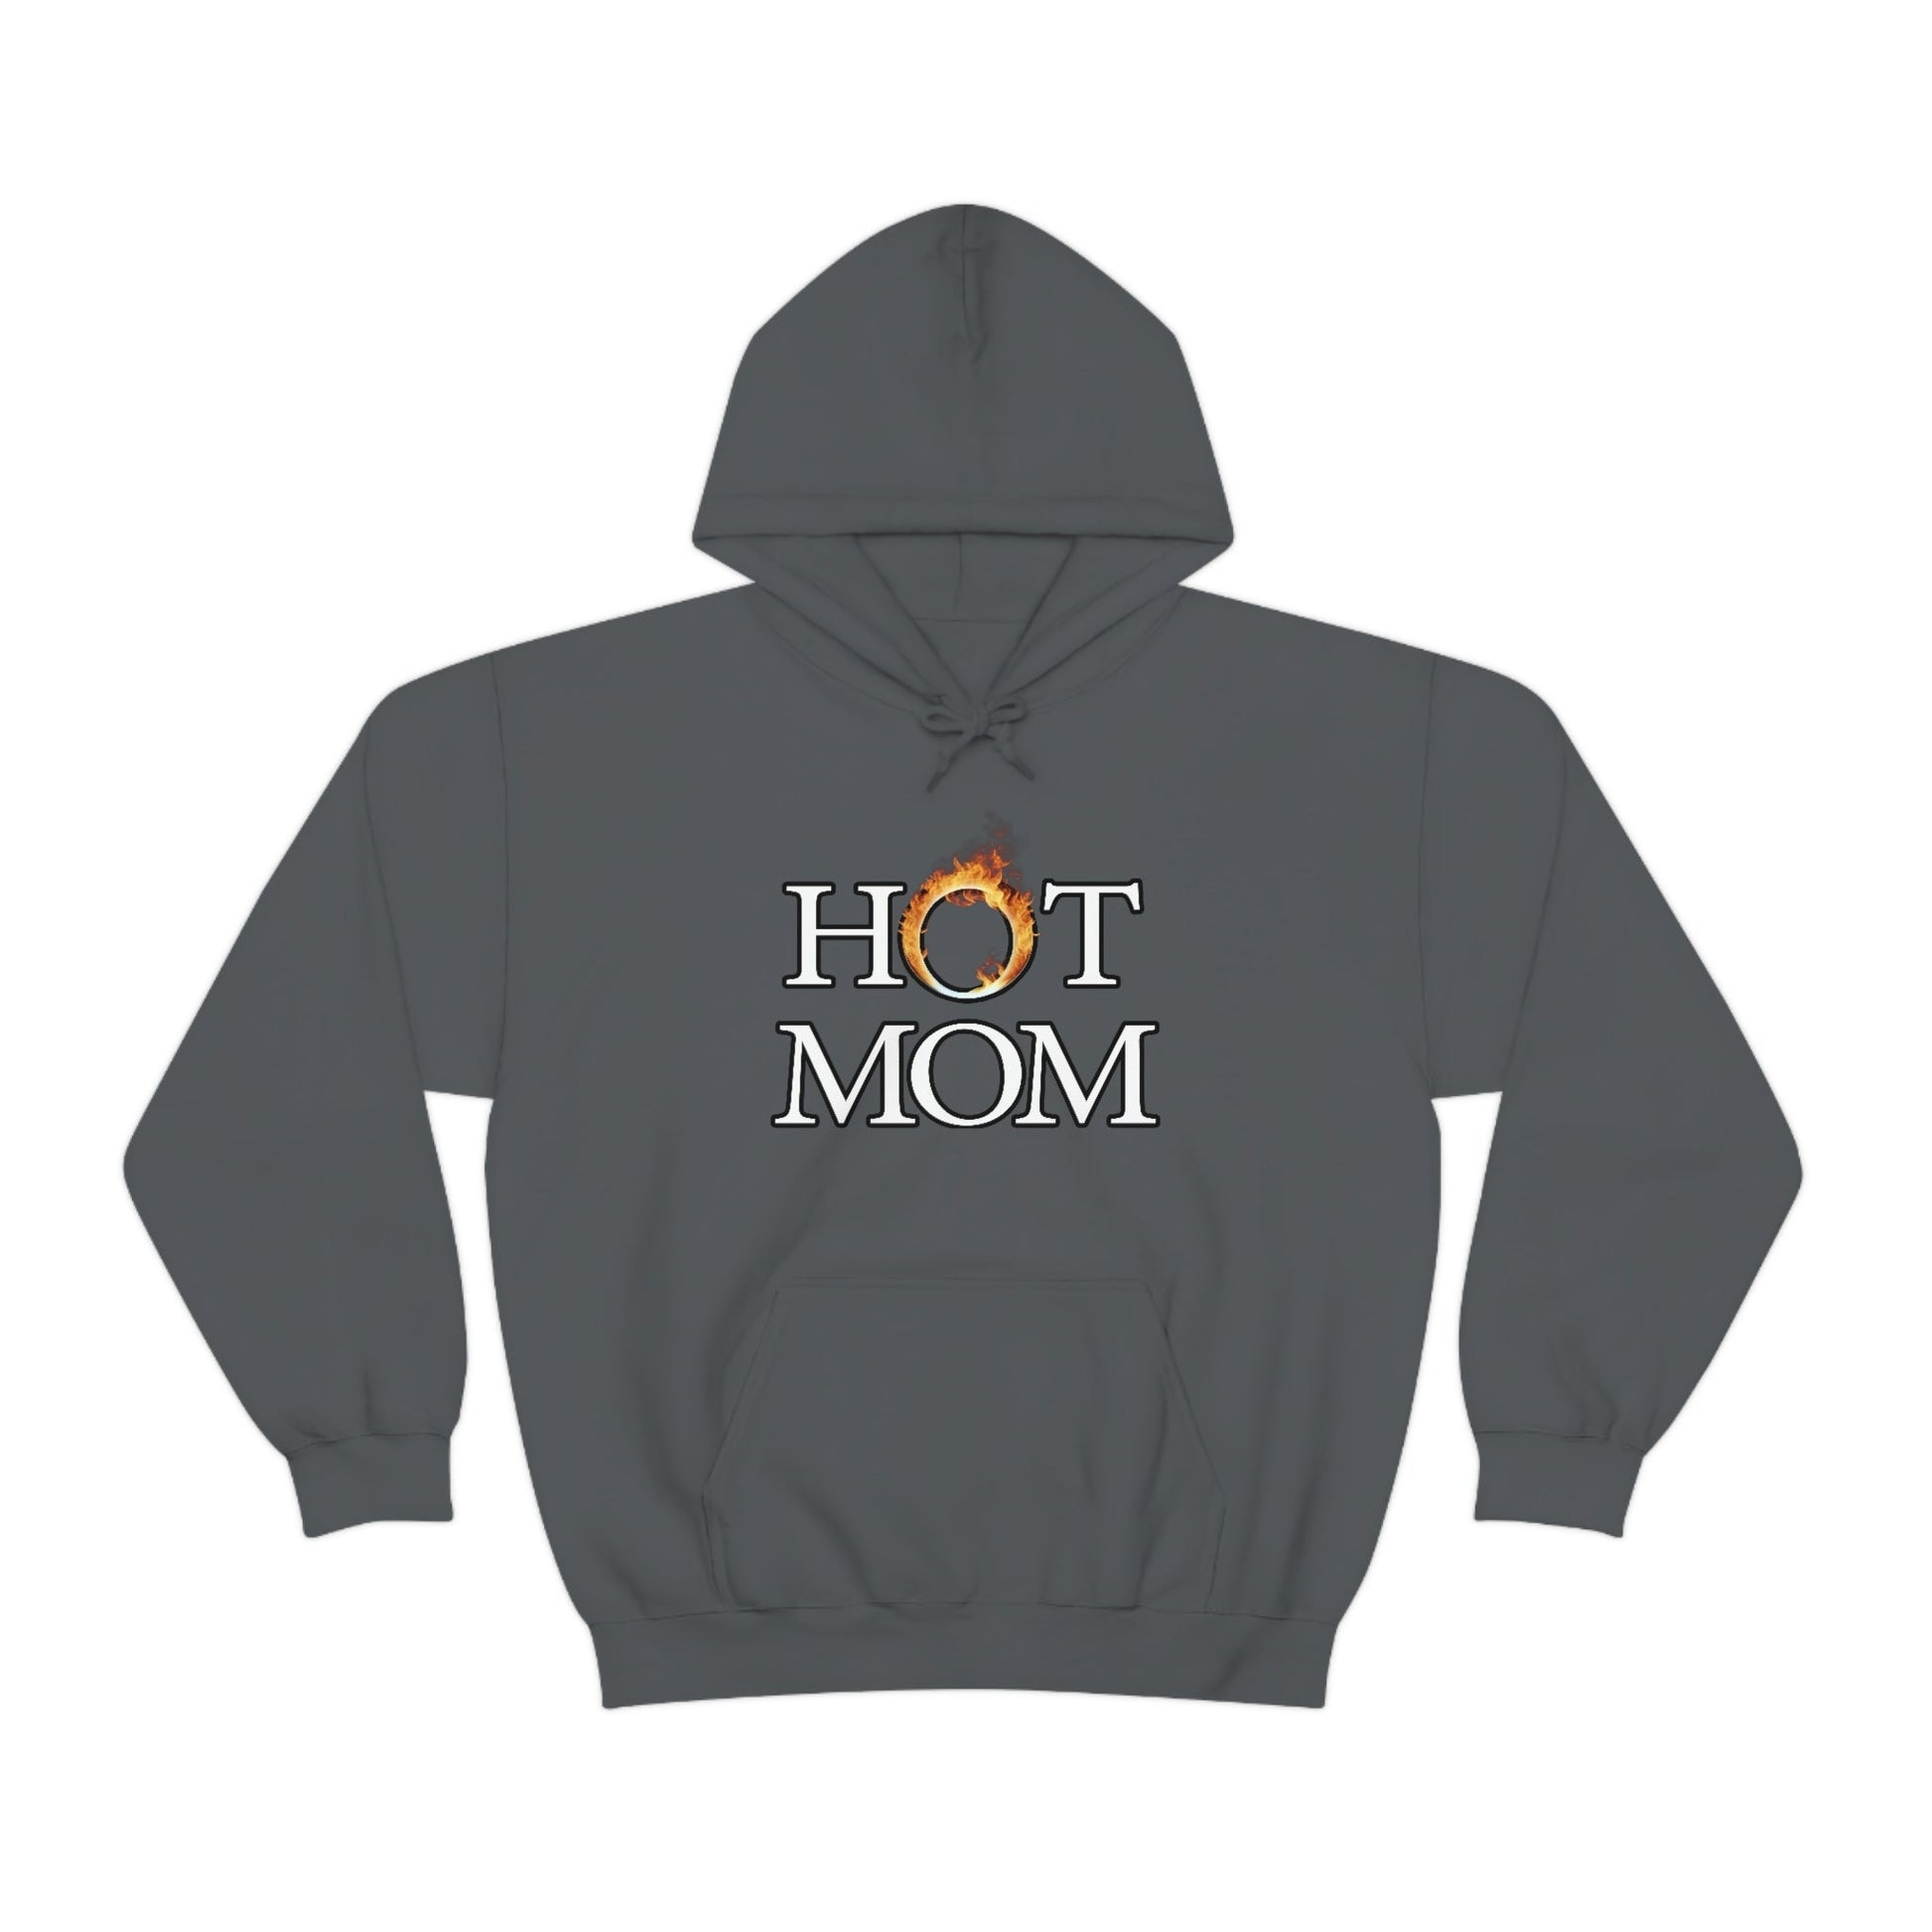 Hot Mom Hoodie - Bind on Equip - 98841776736590664808